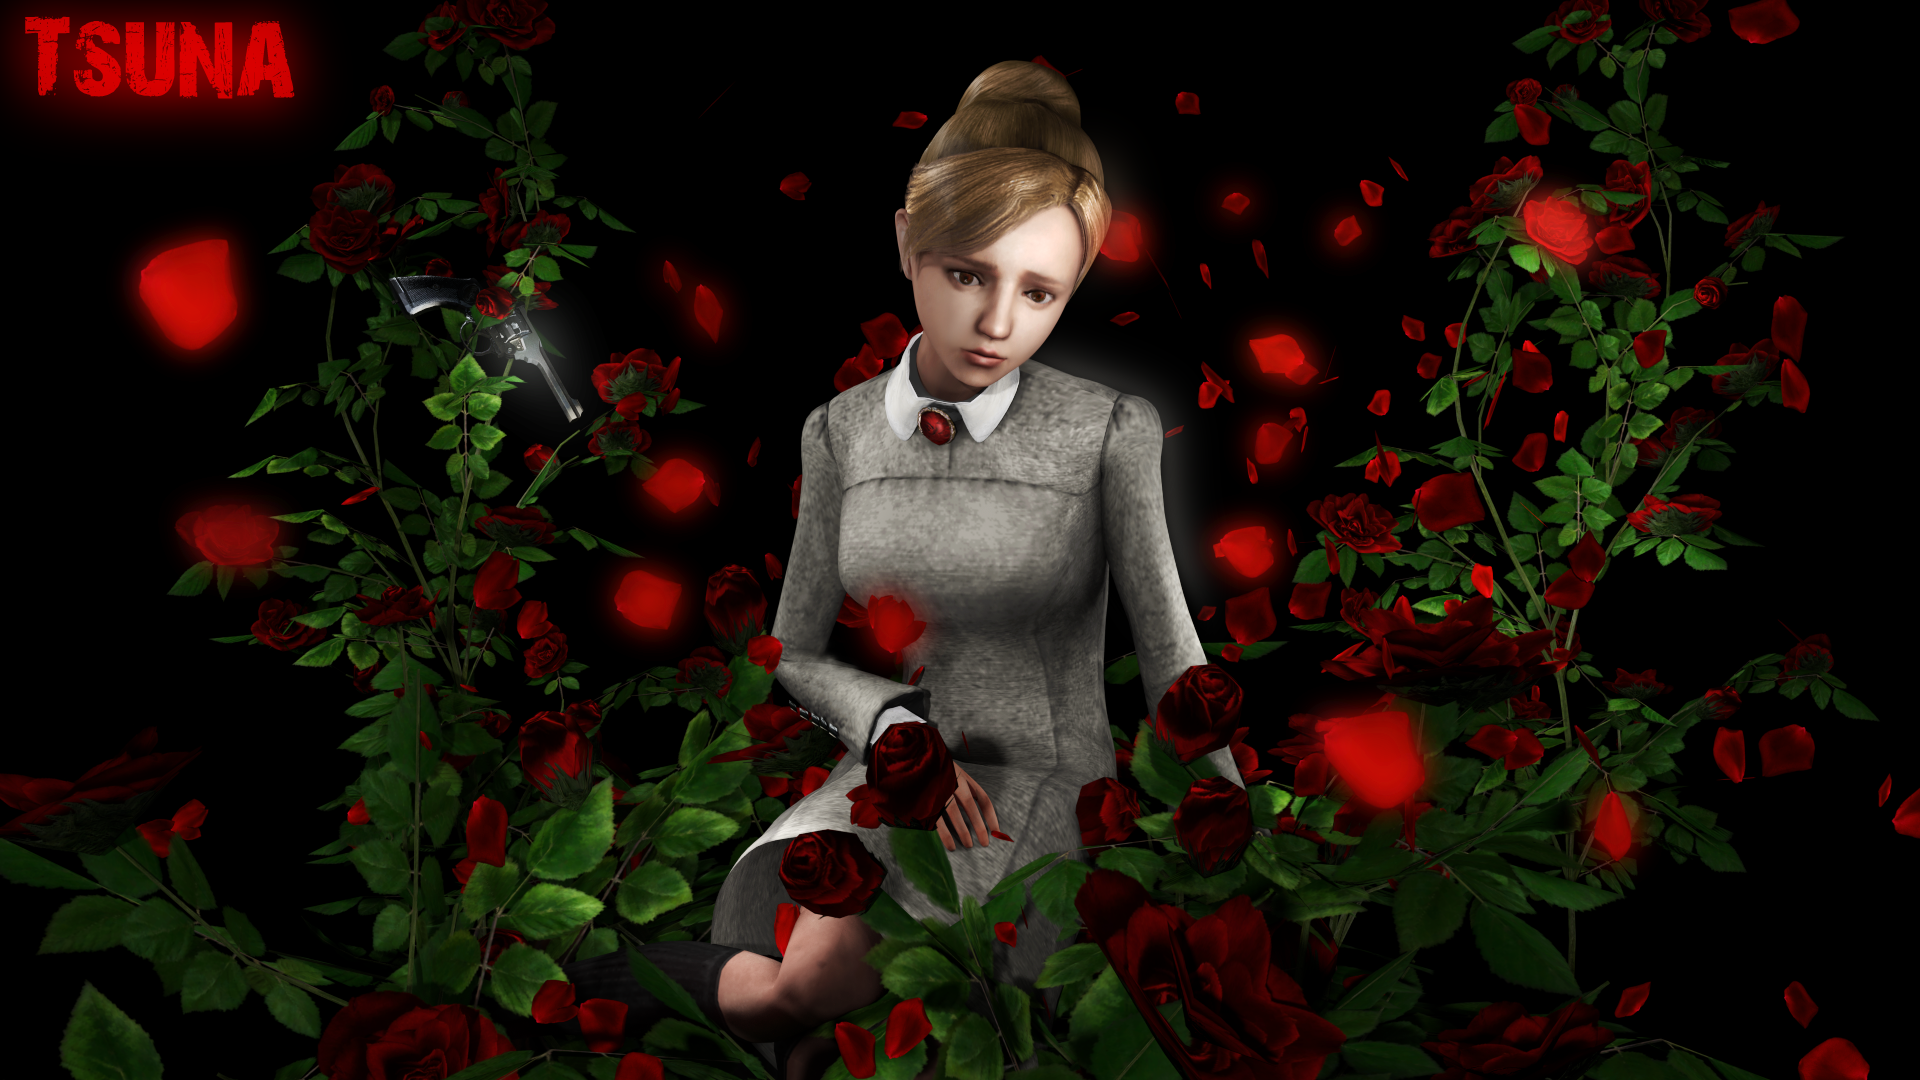 Rule of rose - Jennifer by OTsunaO on DeviantArt